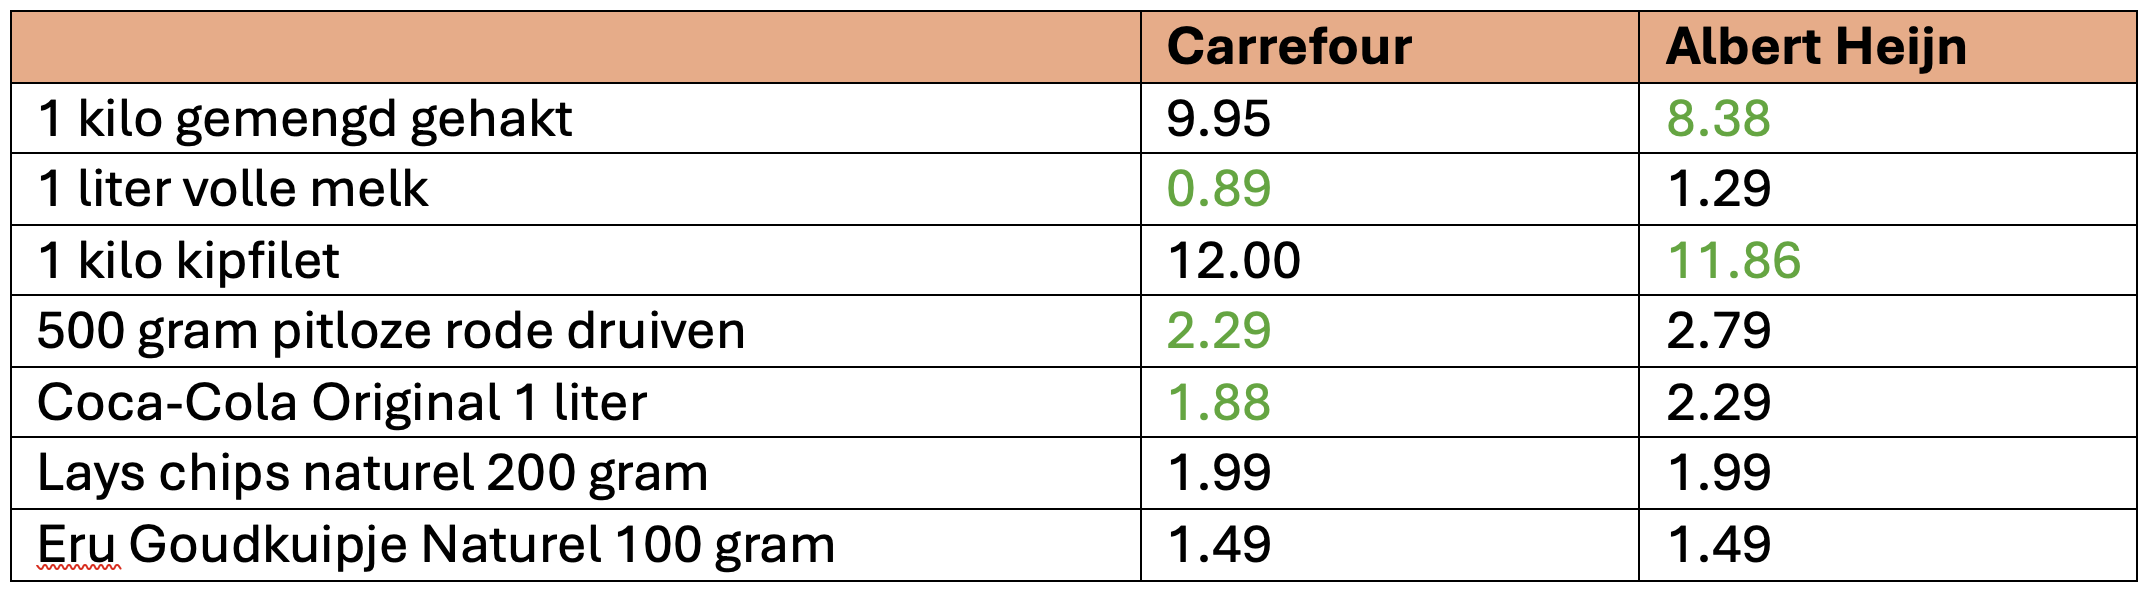 Prijzen vergelijken - Belgie en Nederland - Carrefour en Albert Heijn